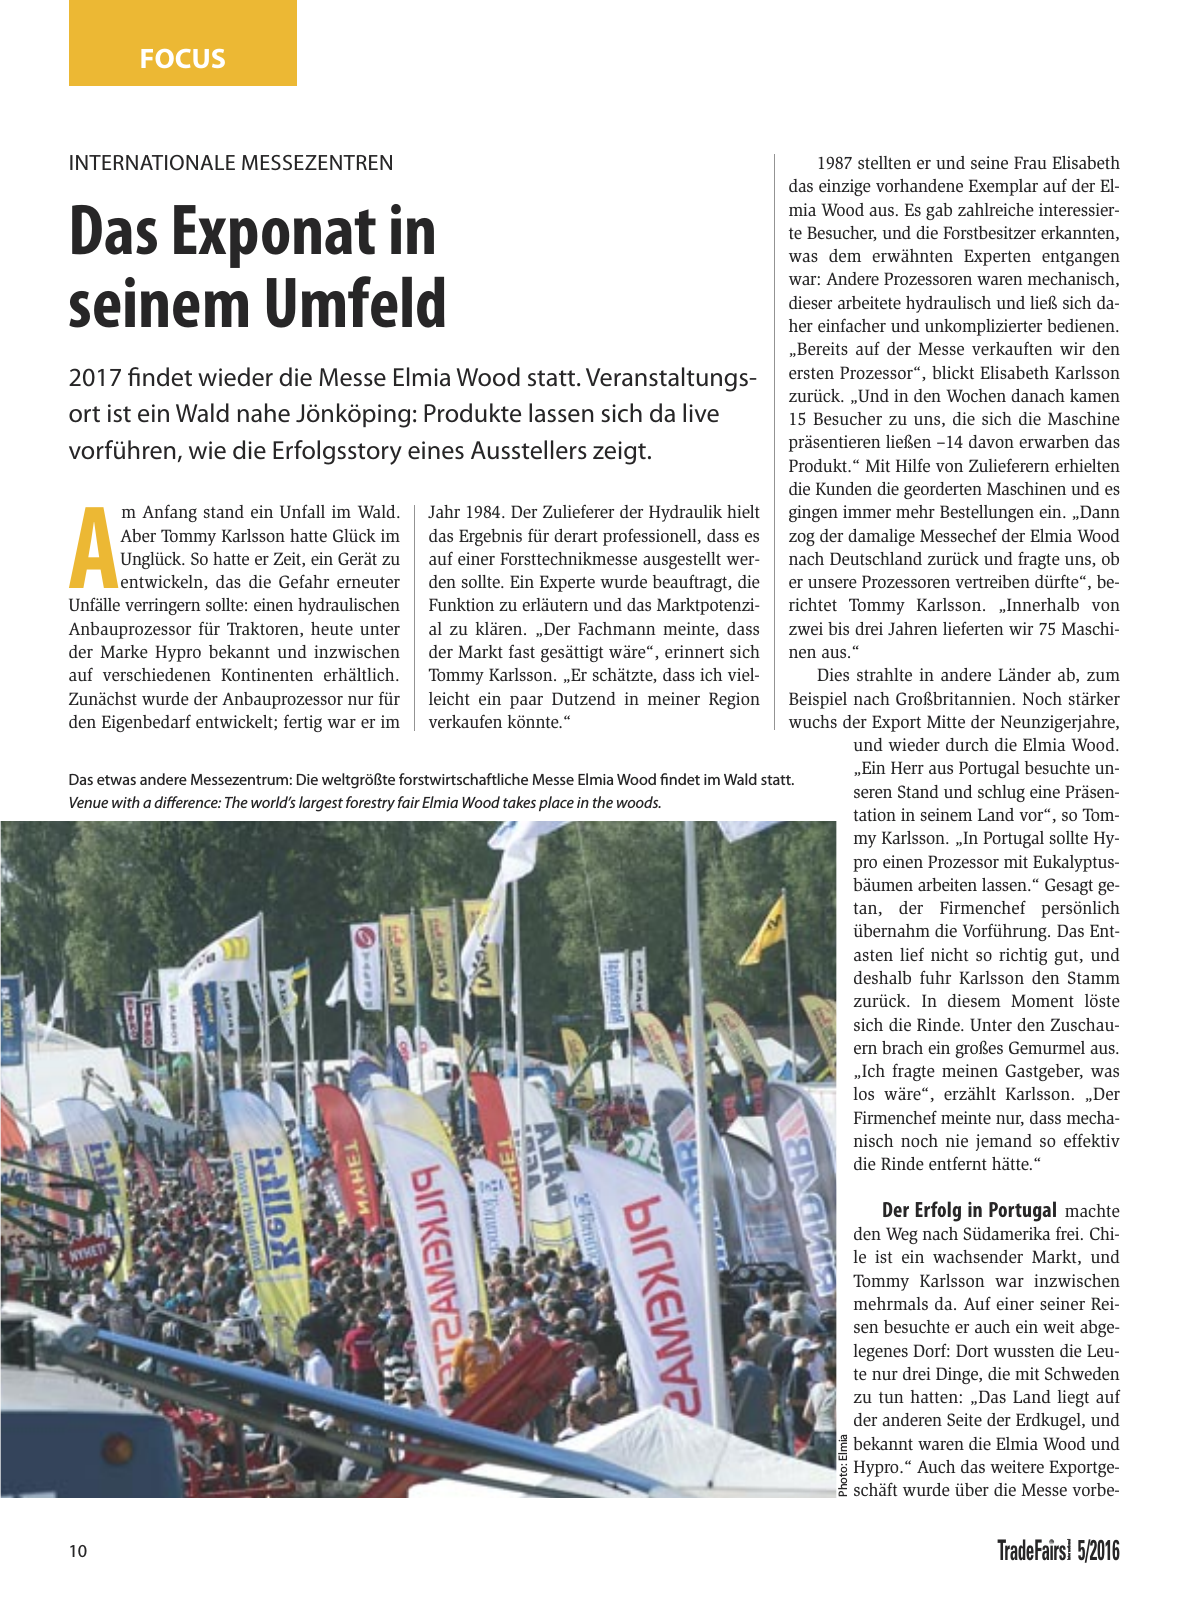 Vorschau TFI Trade-Fairs-International 05/2016 Seite 10